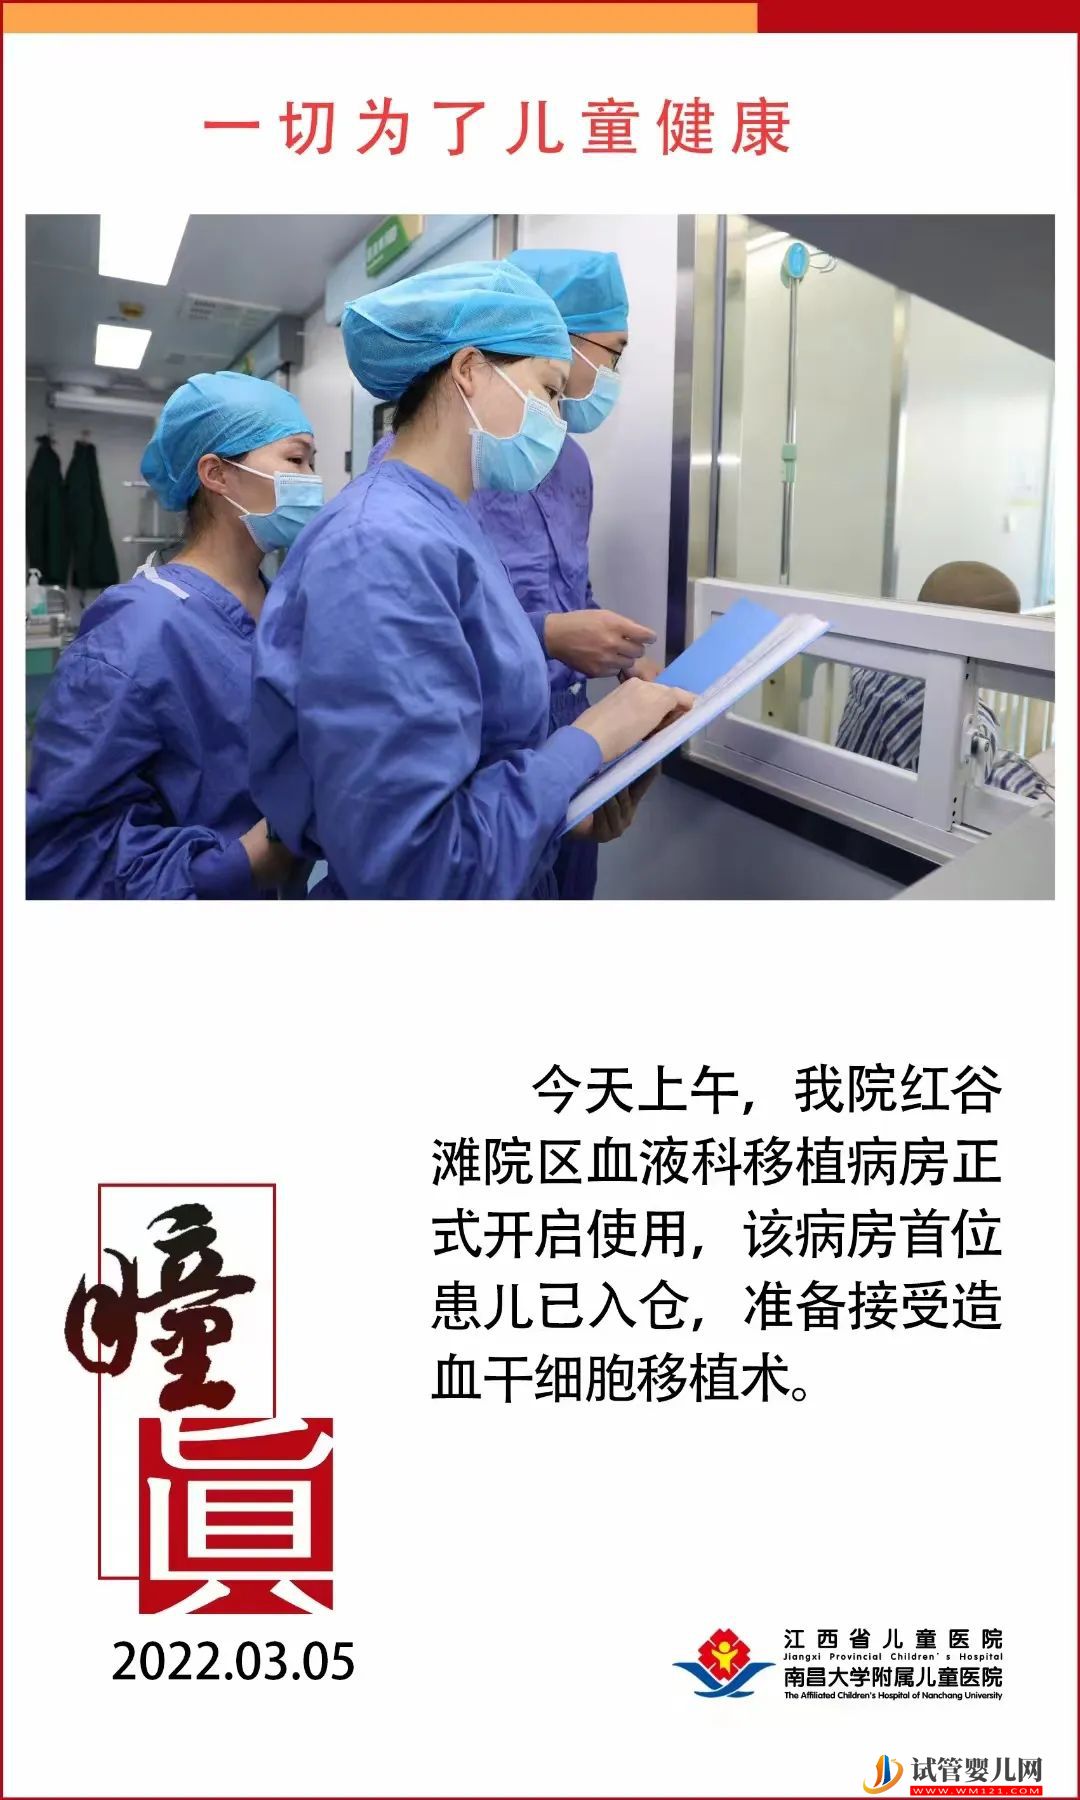 【踔厉奋发】江西省儿童医院造血干细胞移植仓开仓一周年(图3)